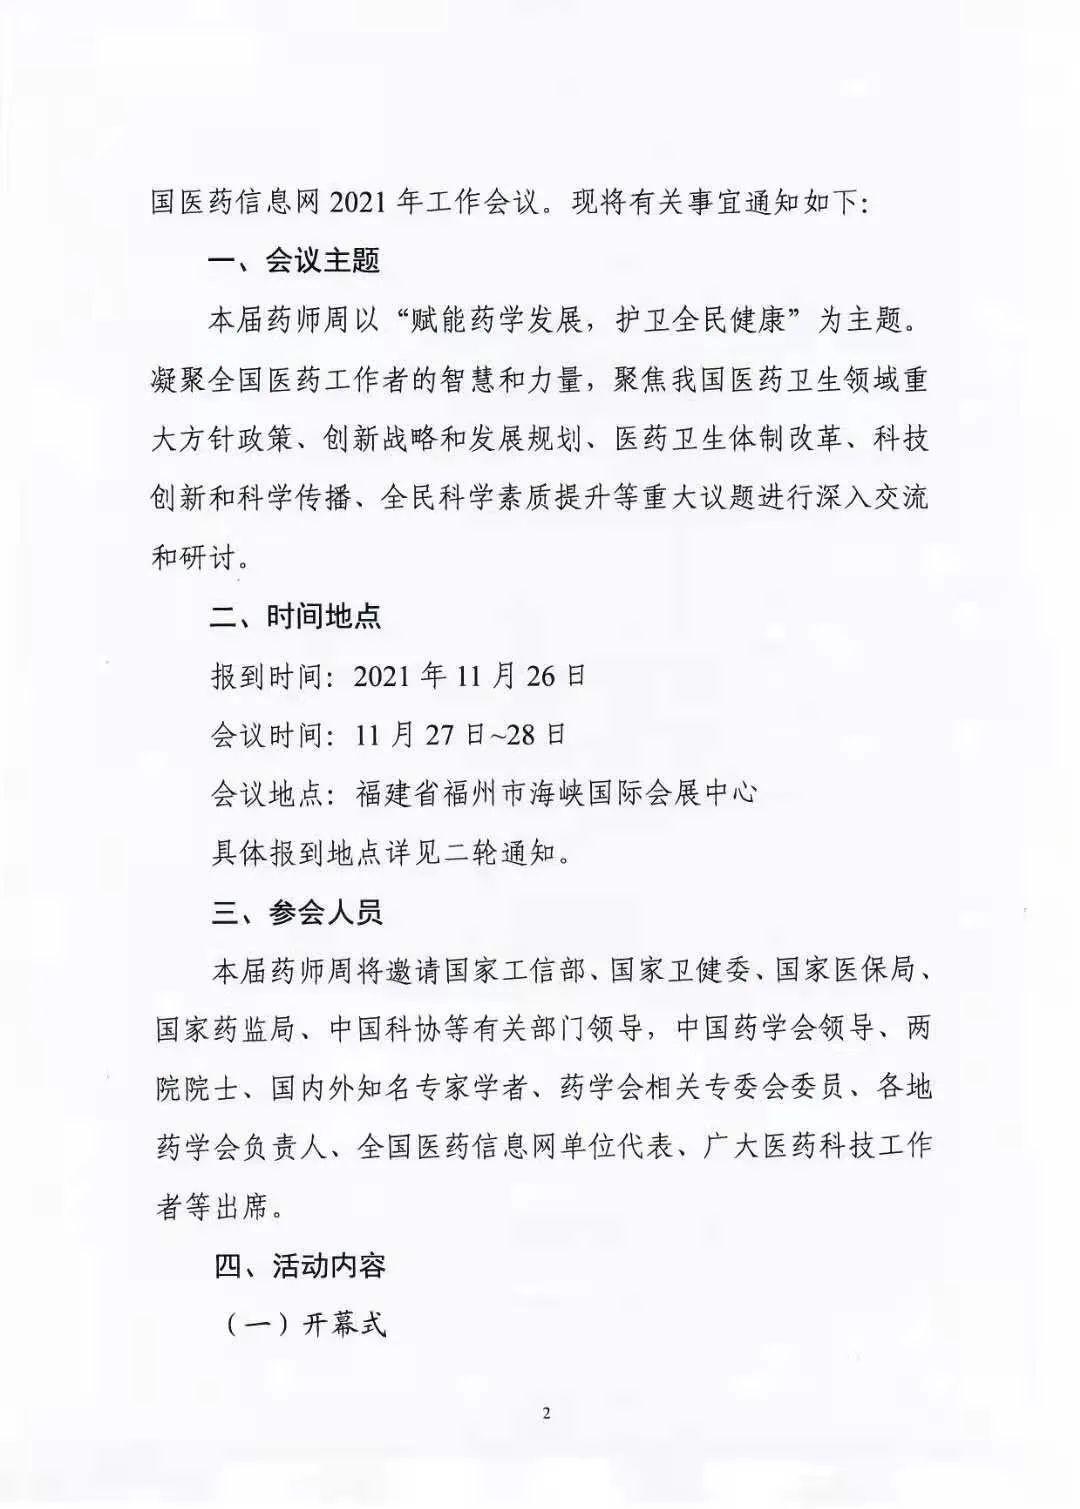 关于举办中国药学会第二十一届中国药师周的通知（第一轮）(图2)